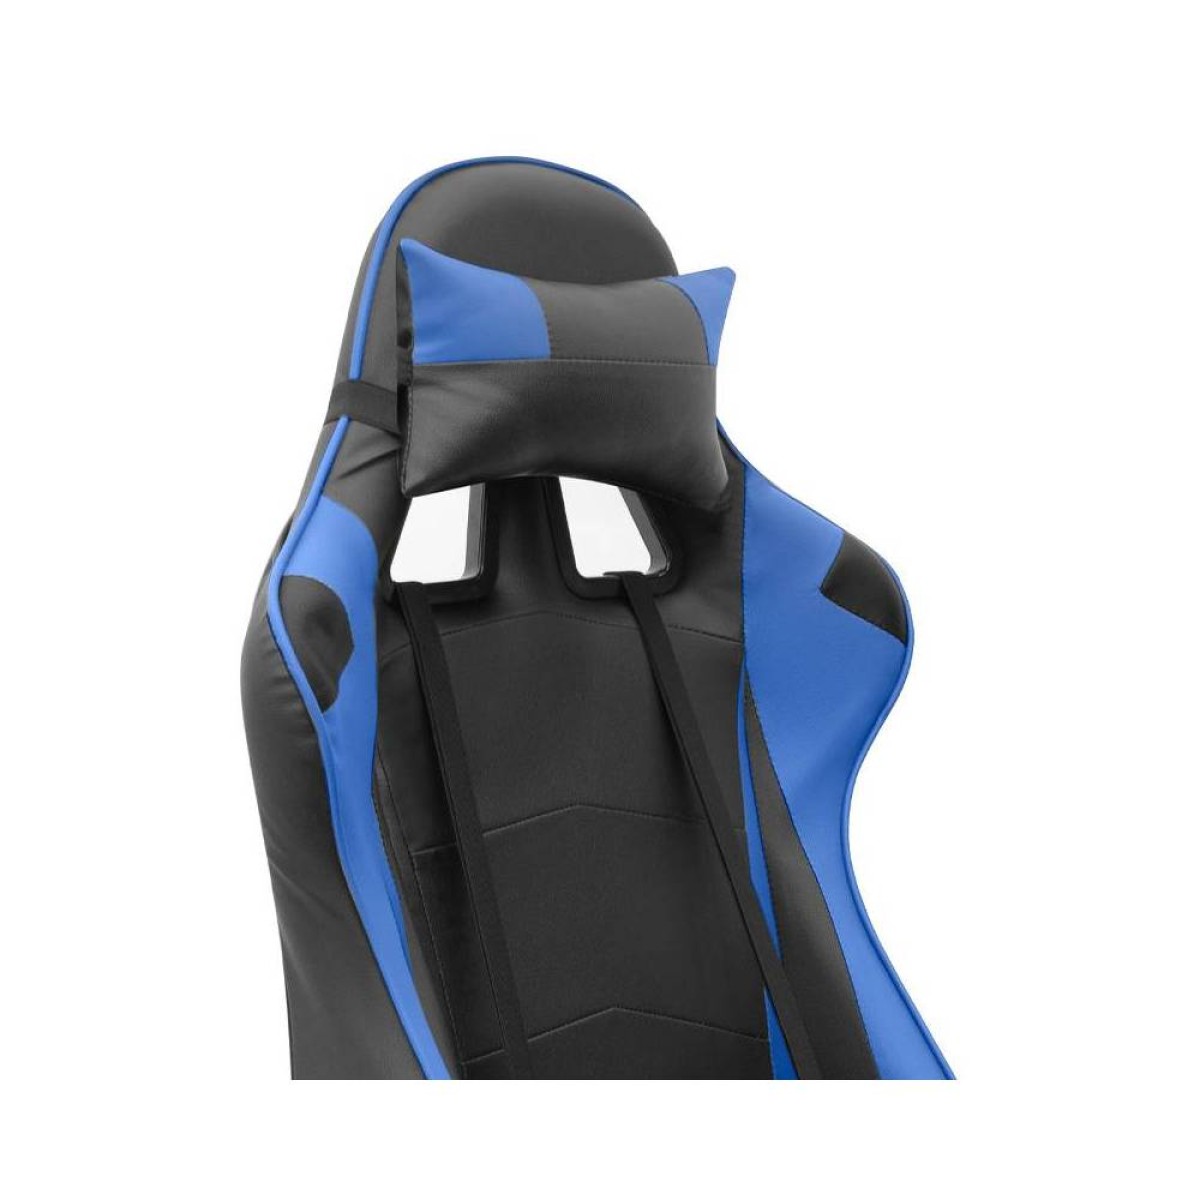 Καρέκλα γραφείου Gaming Alonso  από τεχνόδερμα χρώμα μπλε - μαύρο 67x70x125/135 εκ.